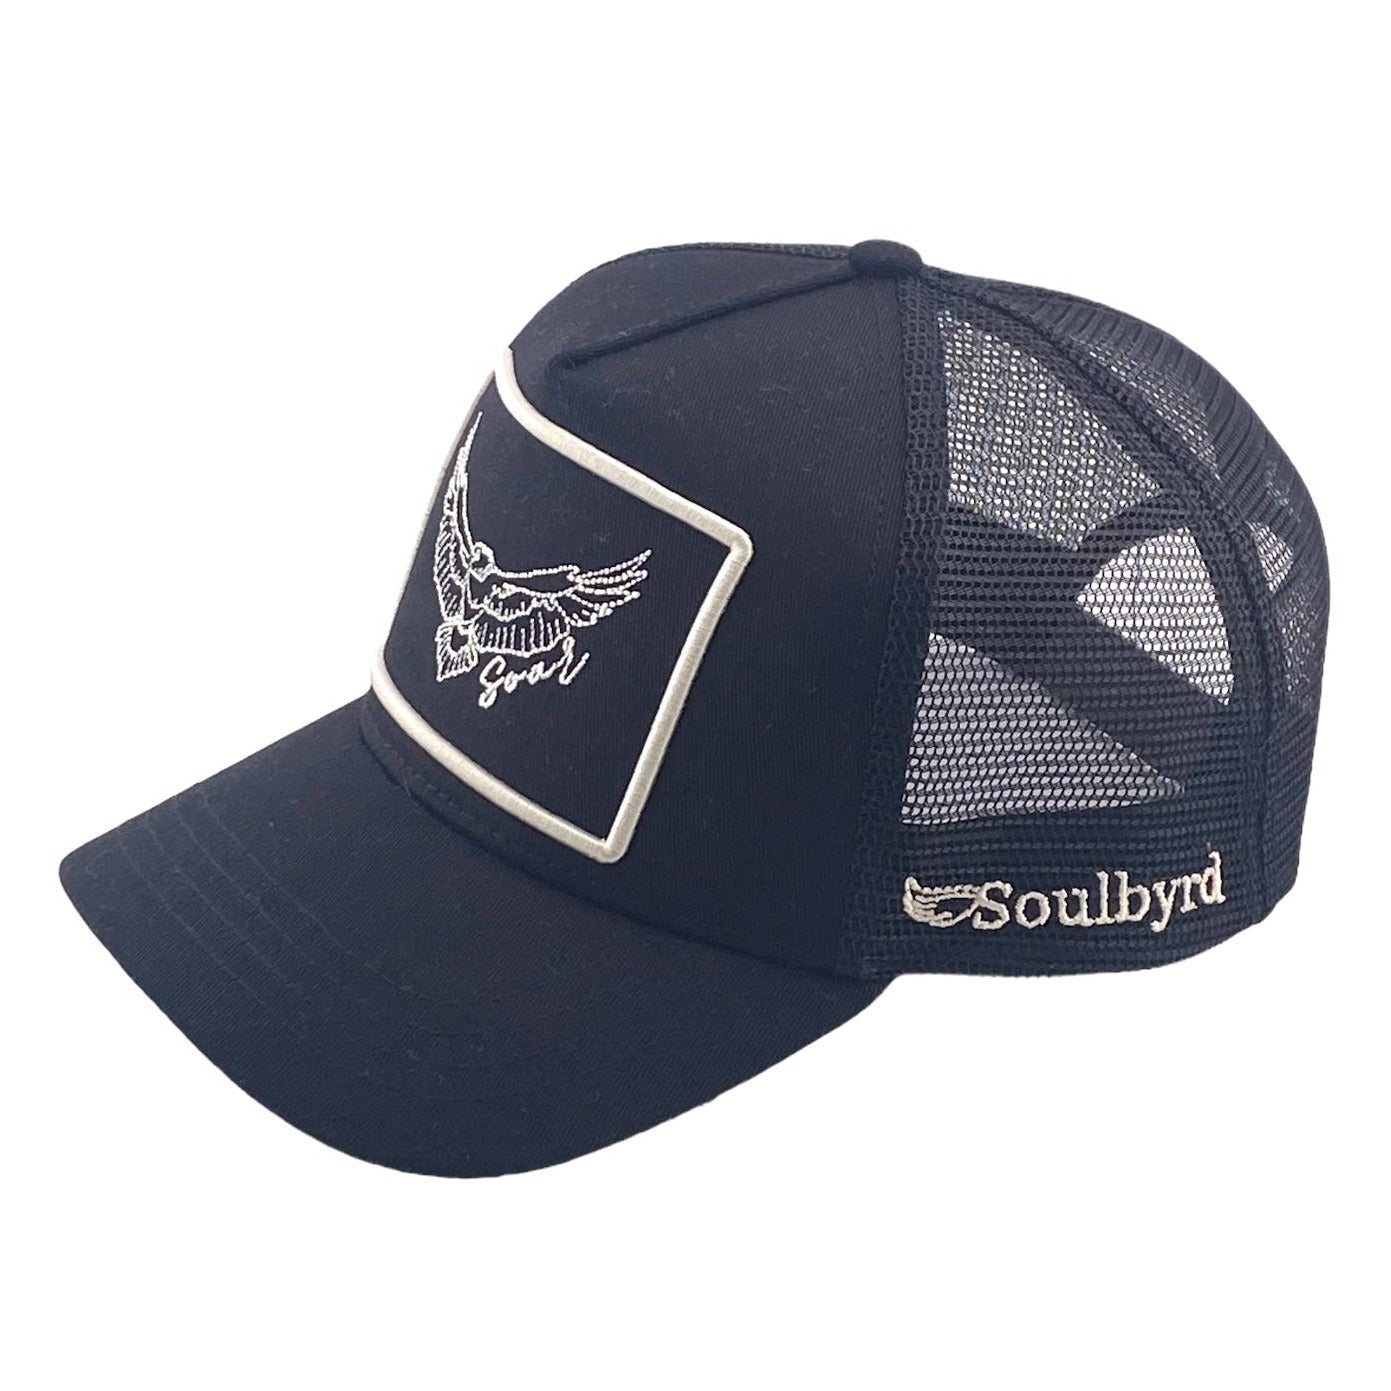 Soar Trucker hat - Black